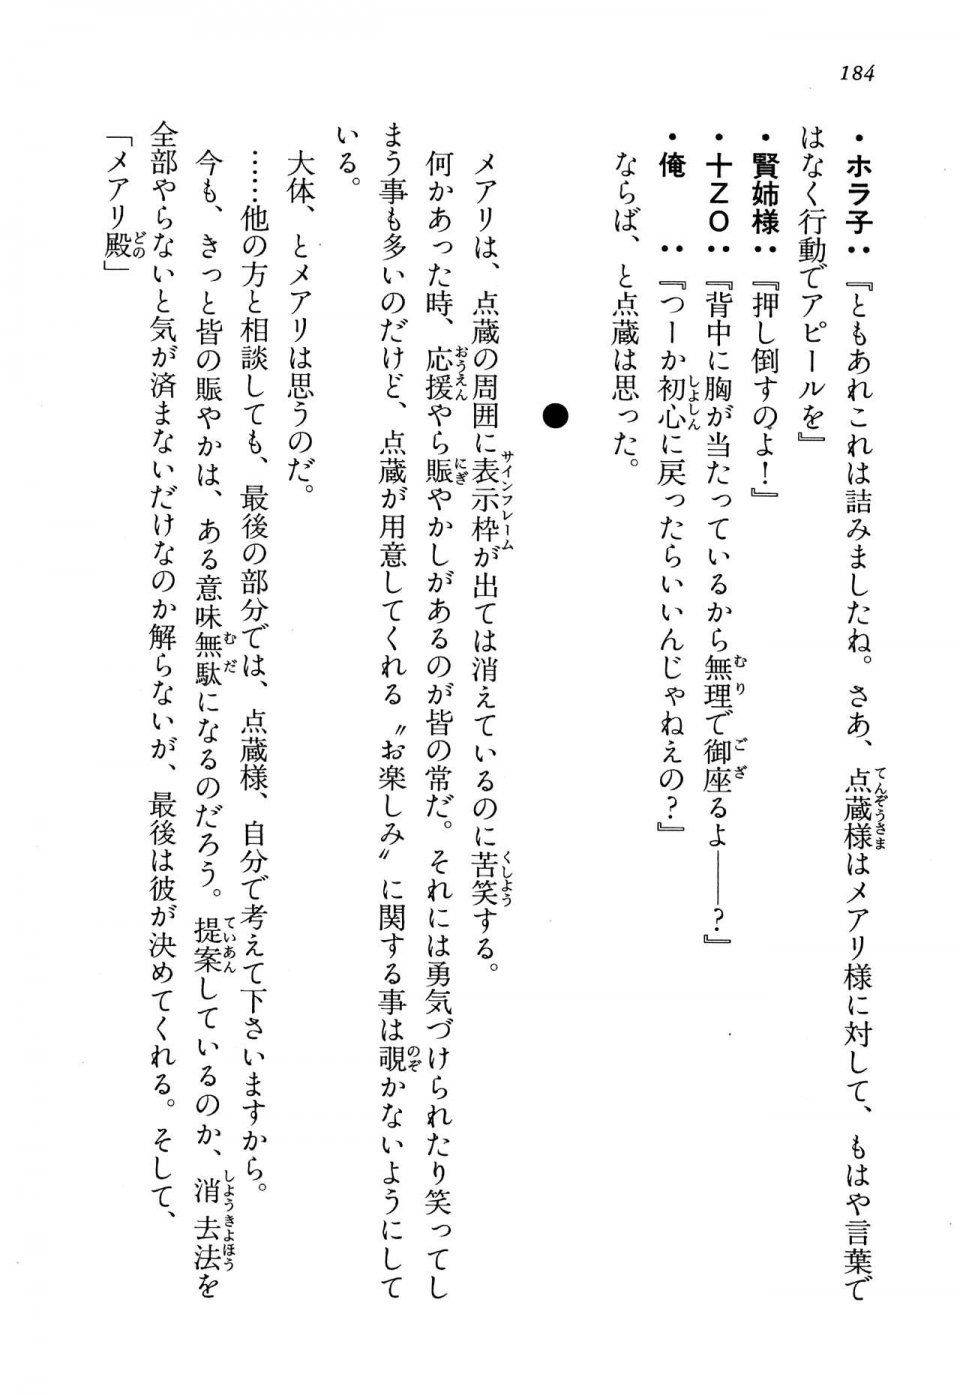 Kyoukai Senjou no Horizon LN Vol 13(6A) - Photo #184